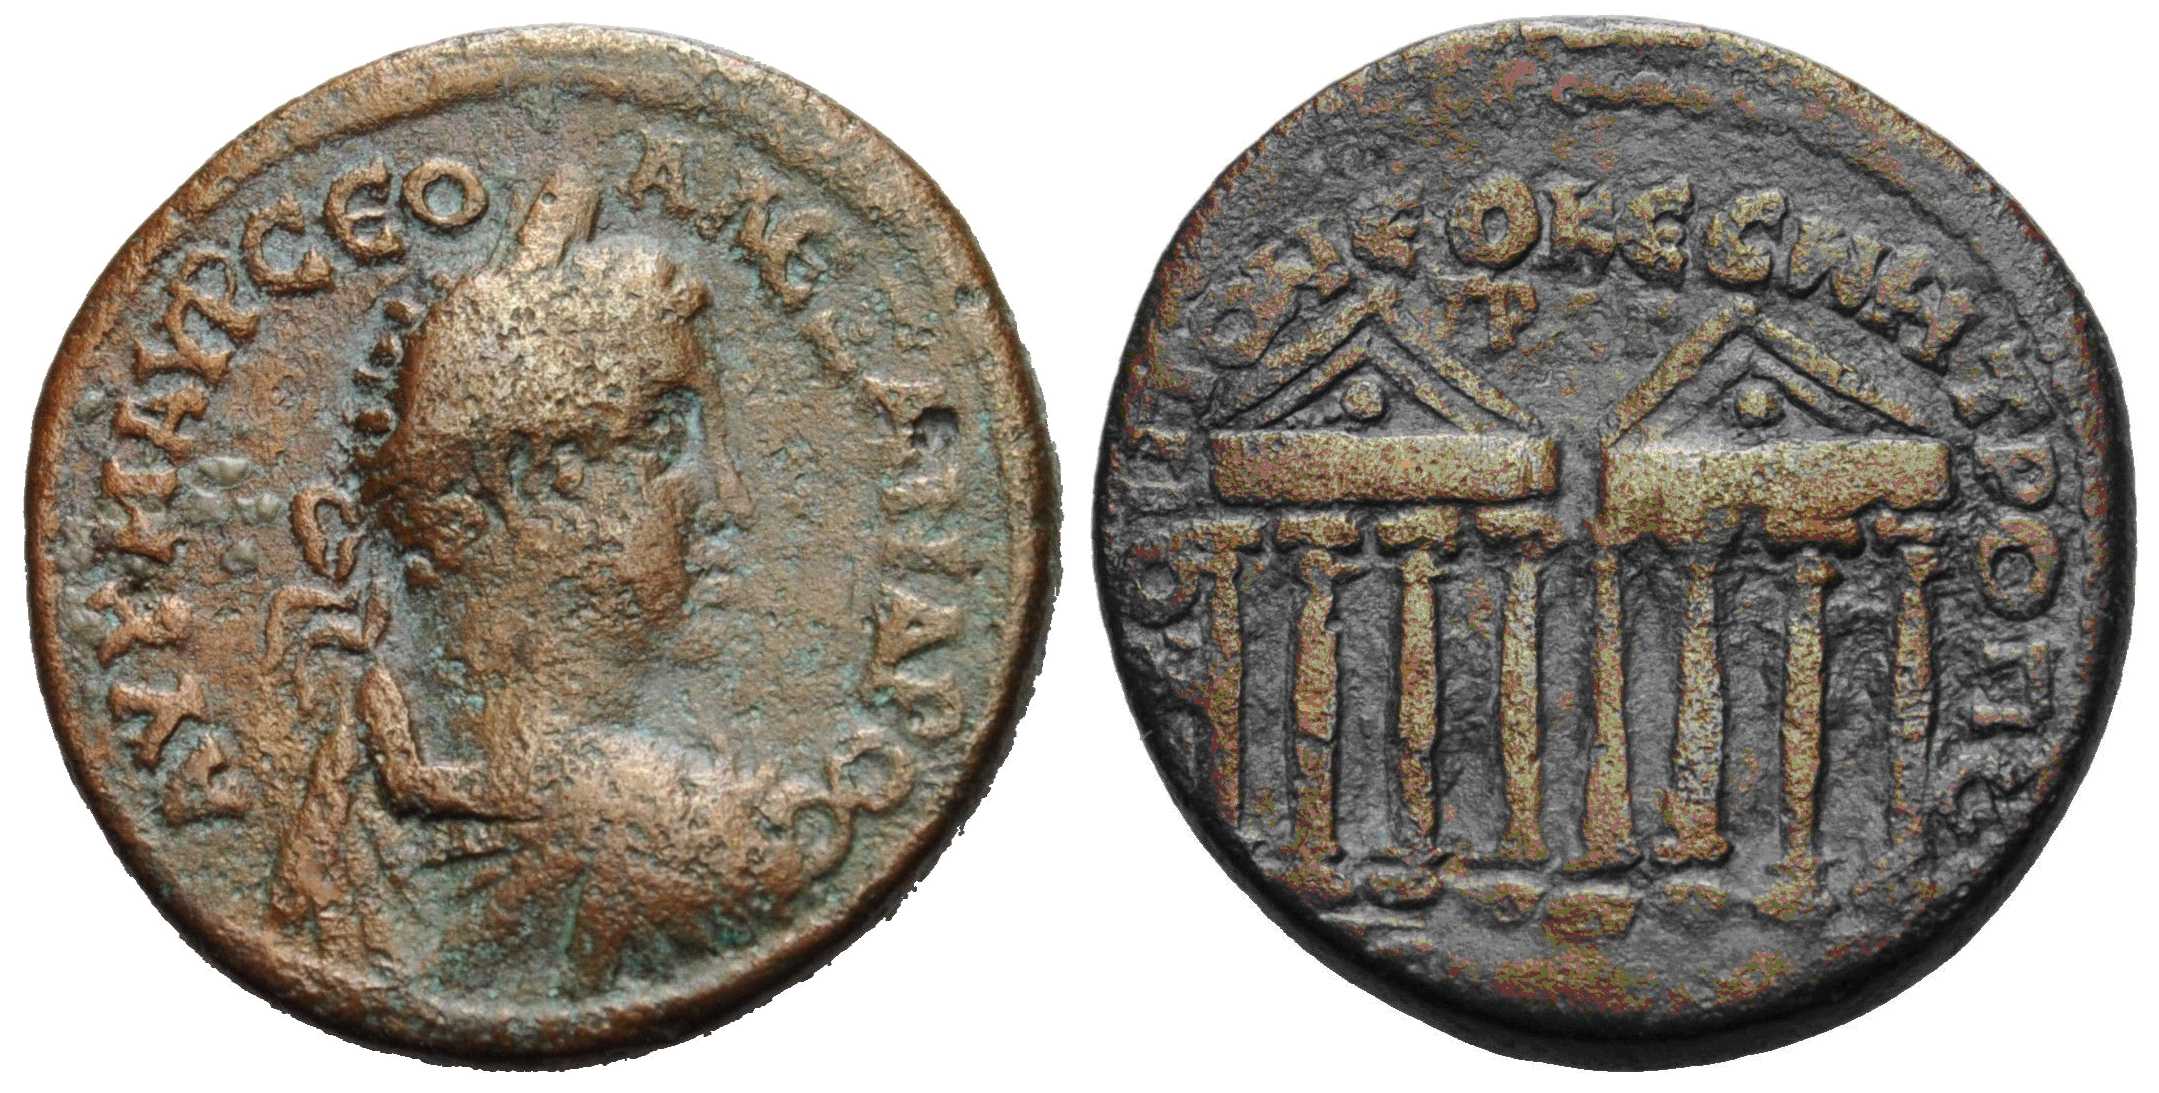 6346 Cabeira-Neocaesarea Pontus Severus Alexander AE